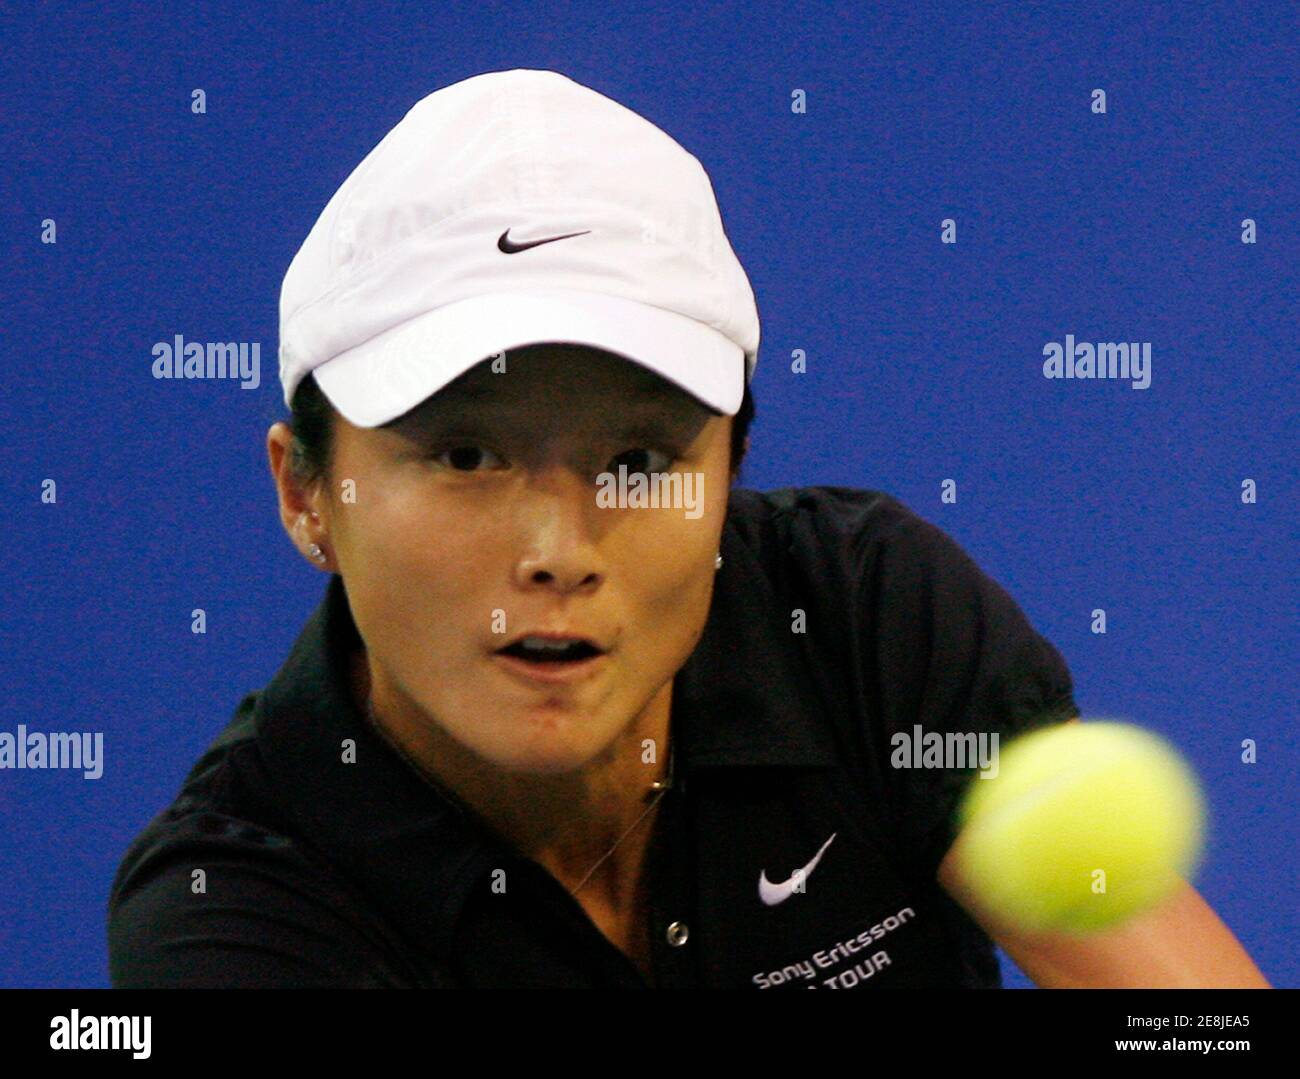 Zi Yan della Cina restituisce un colpo a Jelena Jankovic della Serbia durante la loro prima partita di tennis al Bangkok Open 10 ottobre 2007. REUTERS/Chaiwat Subprasom (THAILANDIA) Foto Stock